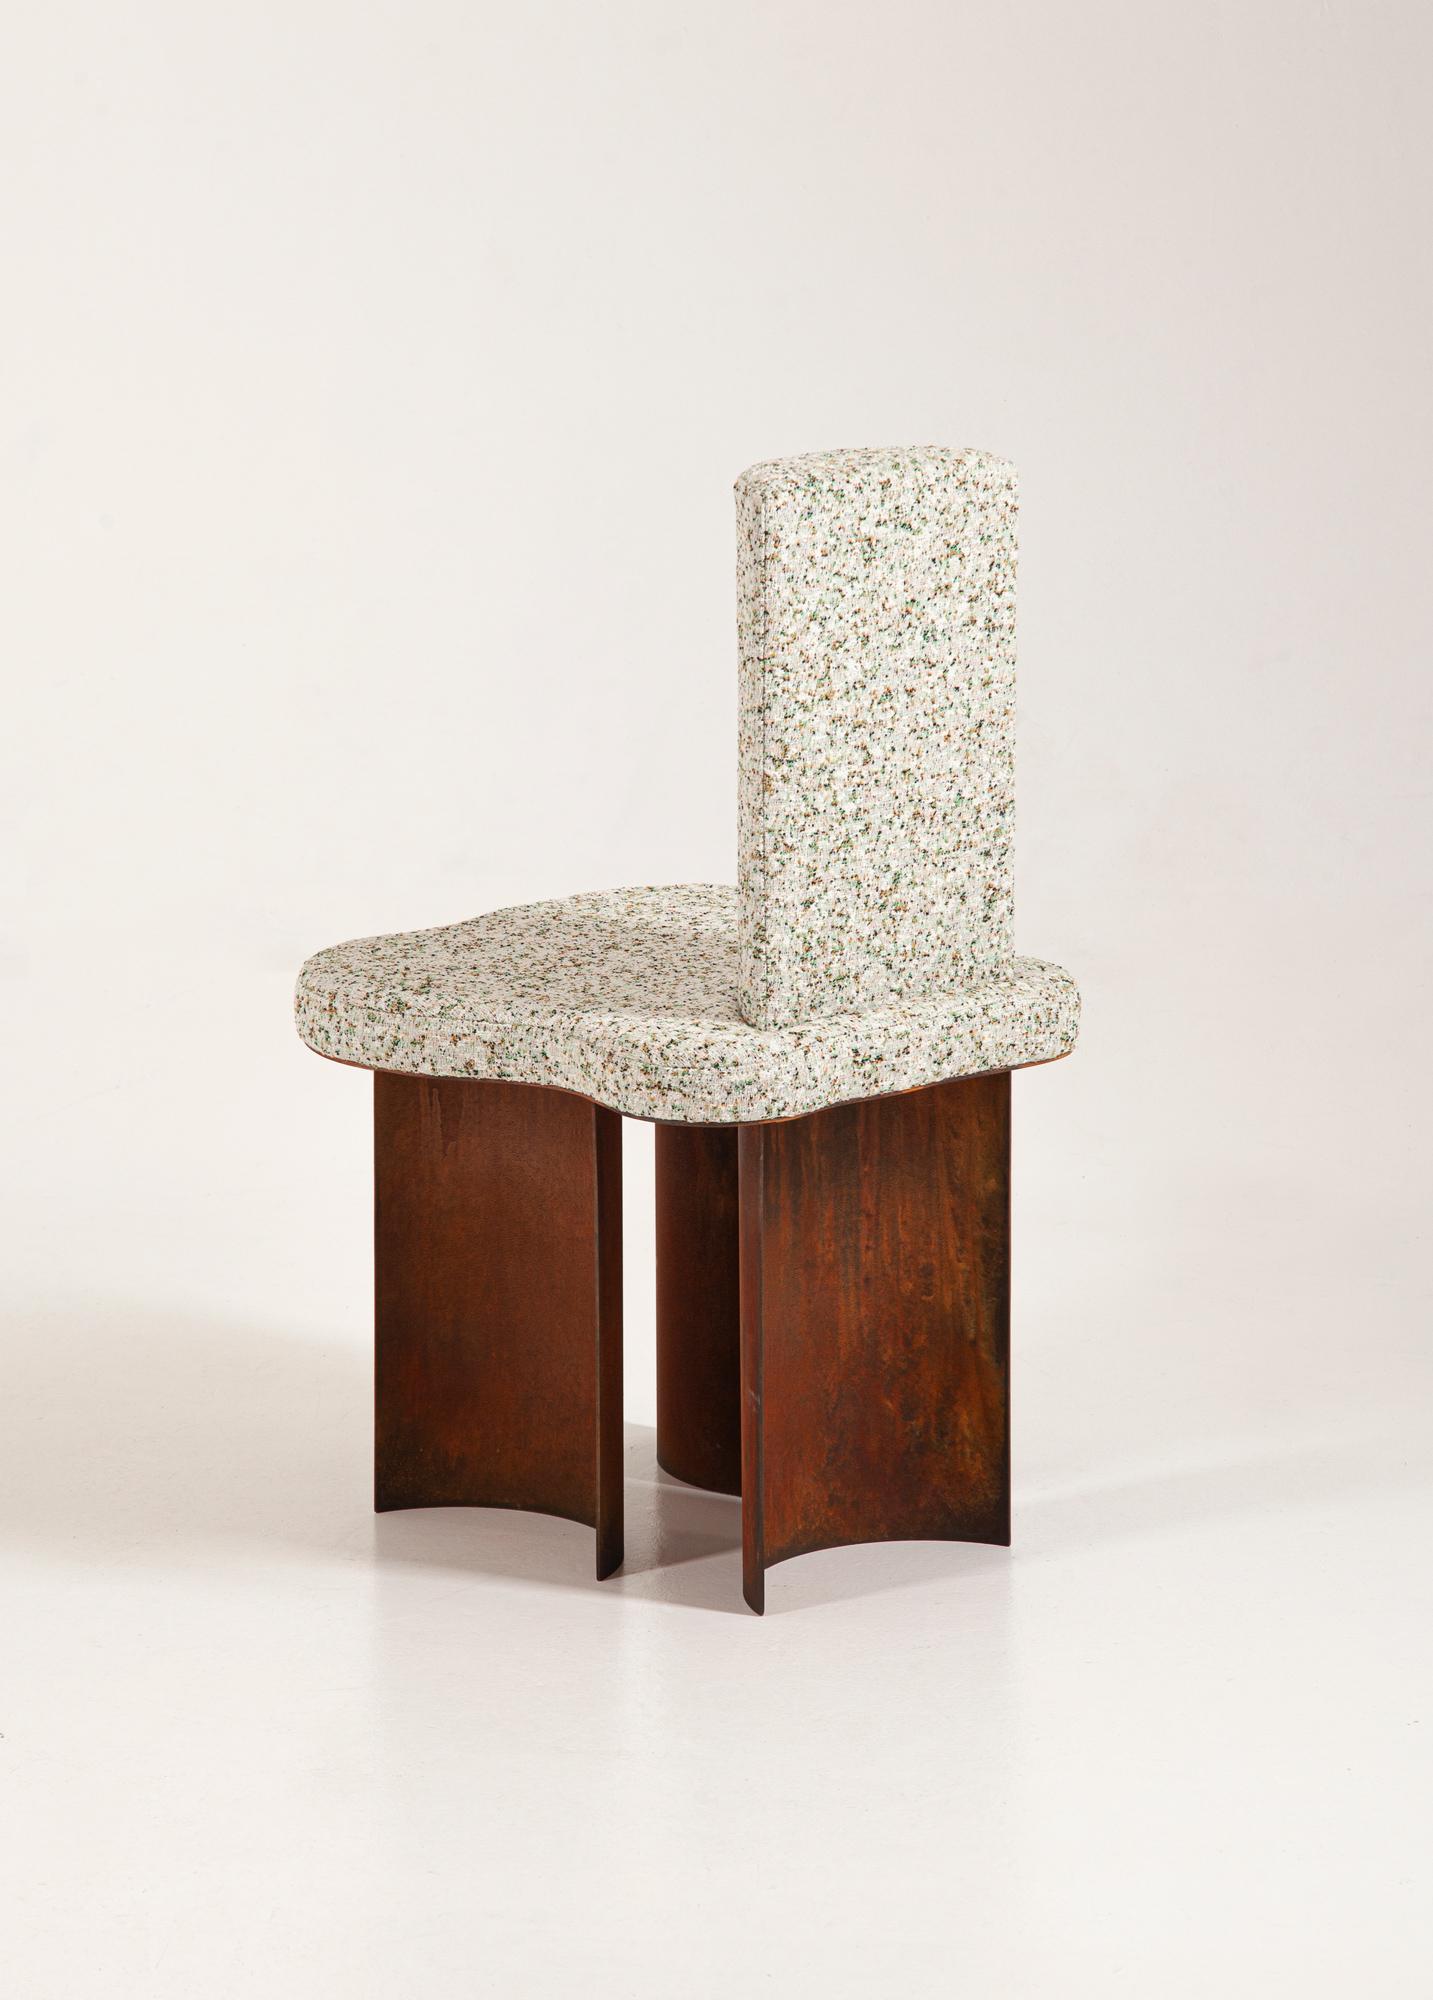 European Modern Chair from 